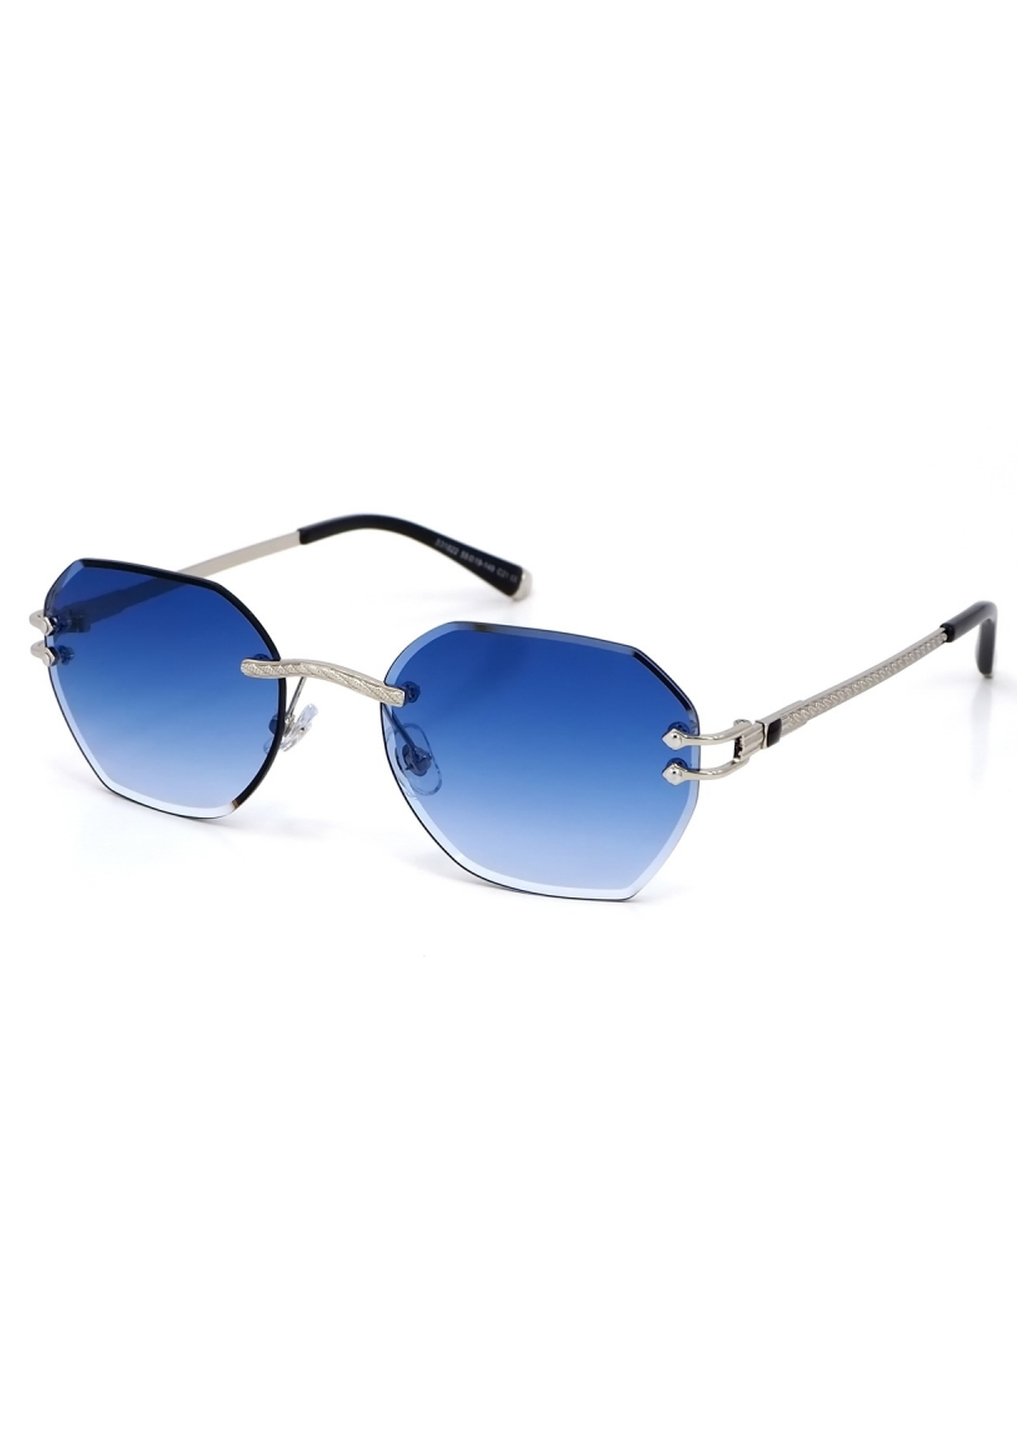 Купить Женские солнцезащитные очки Merlini с поляризацией S31822 117065 - Серый в интернет-магазине